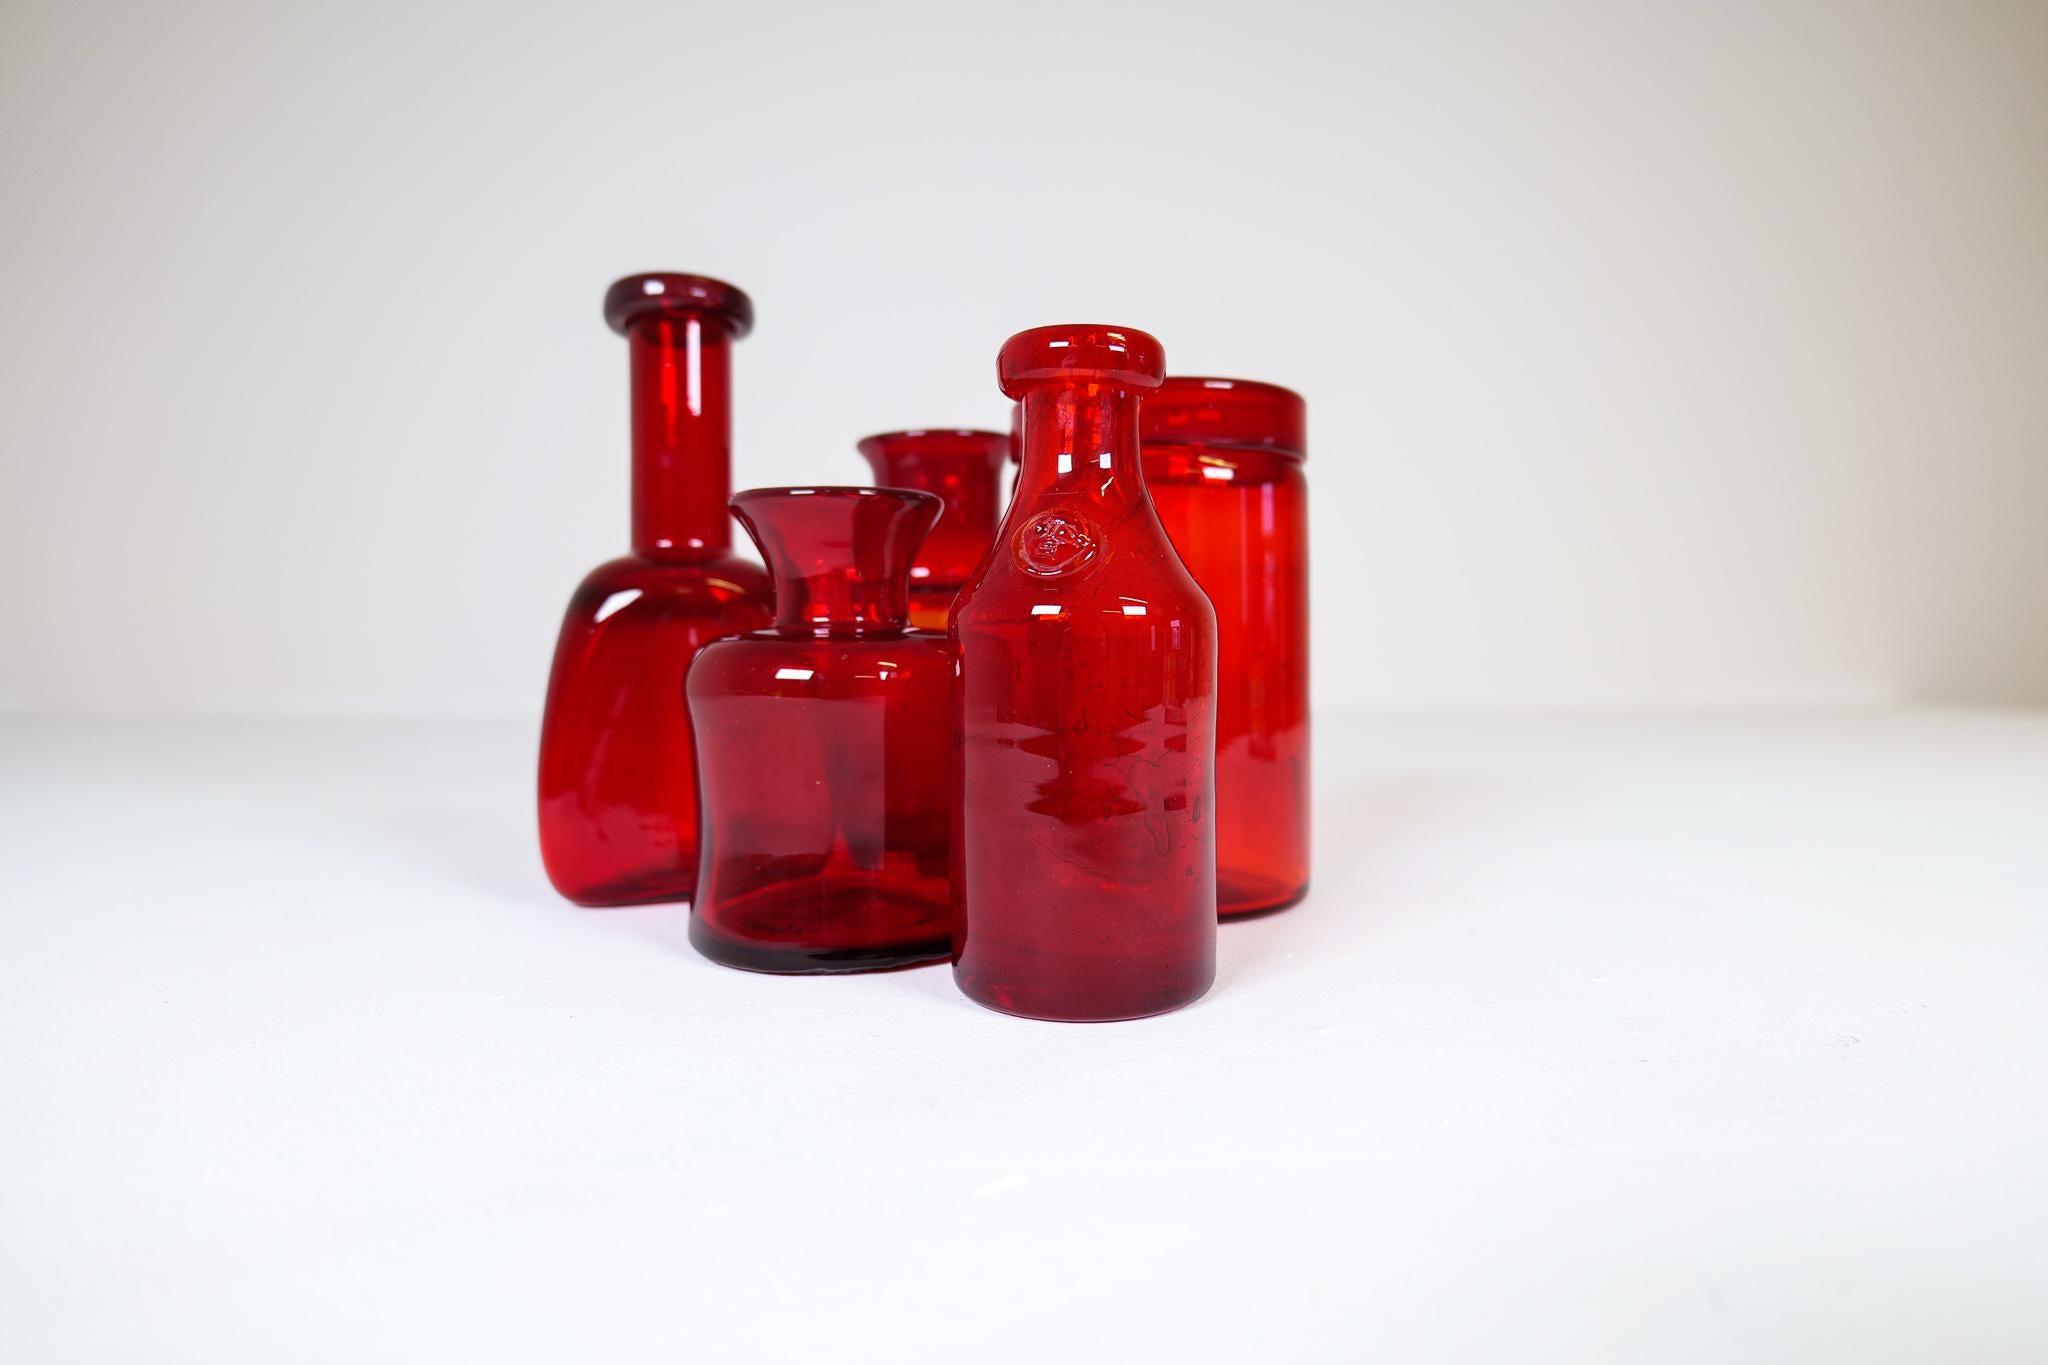 Sammlung von fünf seltenen roten Glasvasen / -gefäßen, entworfen von Erik Höglund. Handgeblasen in der Glashütte von Boda in den 1960er Jahren. Sie sind alle unterschiedlich groß und geformt und in sehr gutem bis ausgezeichnetem Zustand. Sie werden